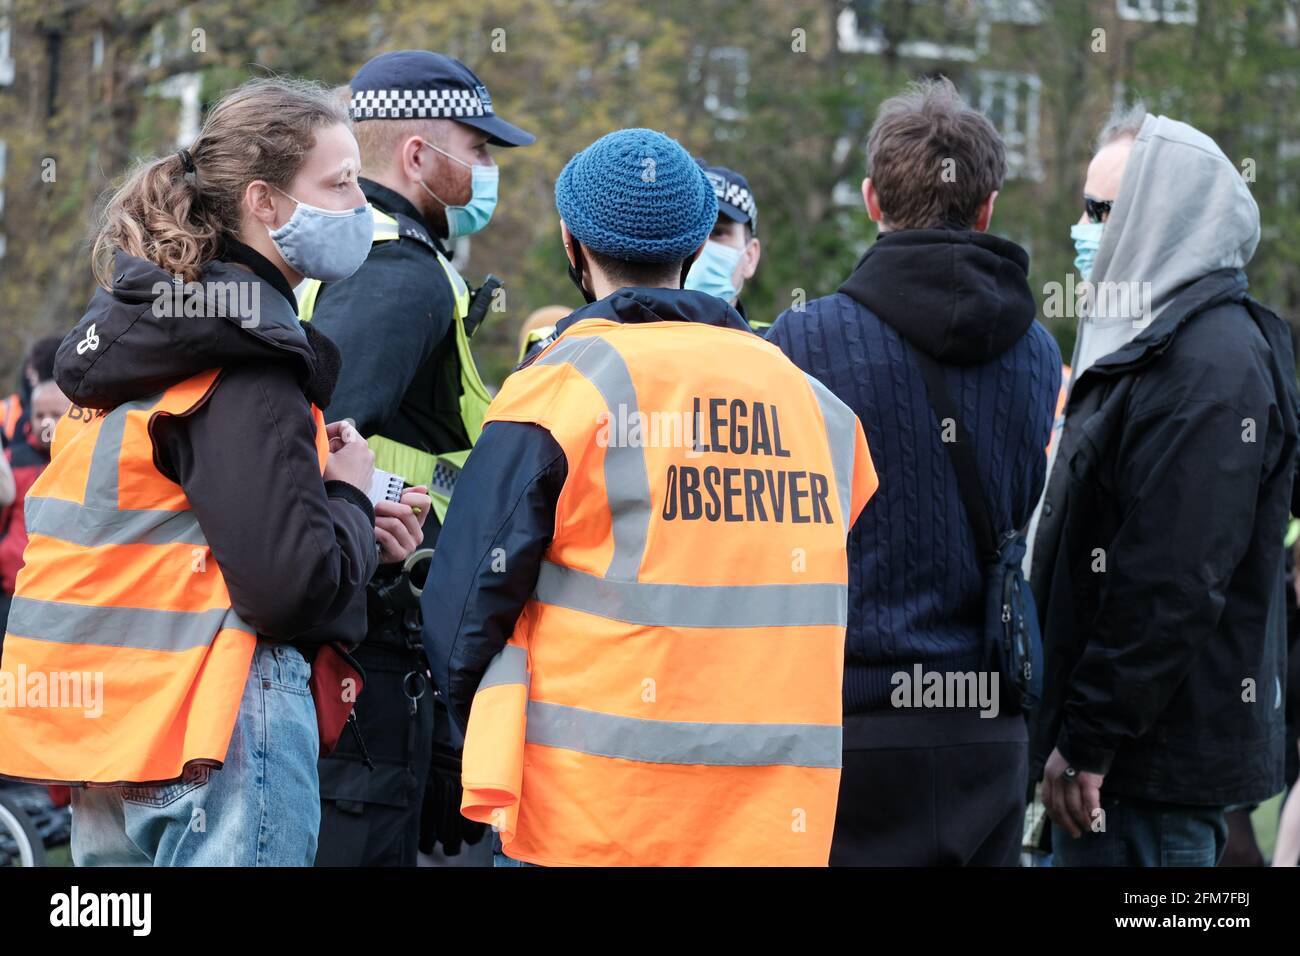 Observadores legales, voluntarios entrenados e identificados por sus chalecos de alta visibilidad monitorean las interacciones policiales en una protesta Kill the Bill en Vauxhall, Londres Foto de stock